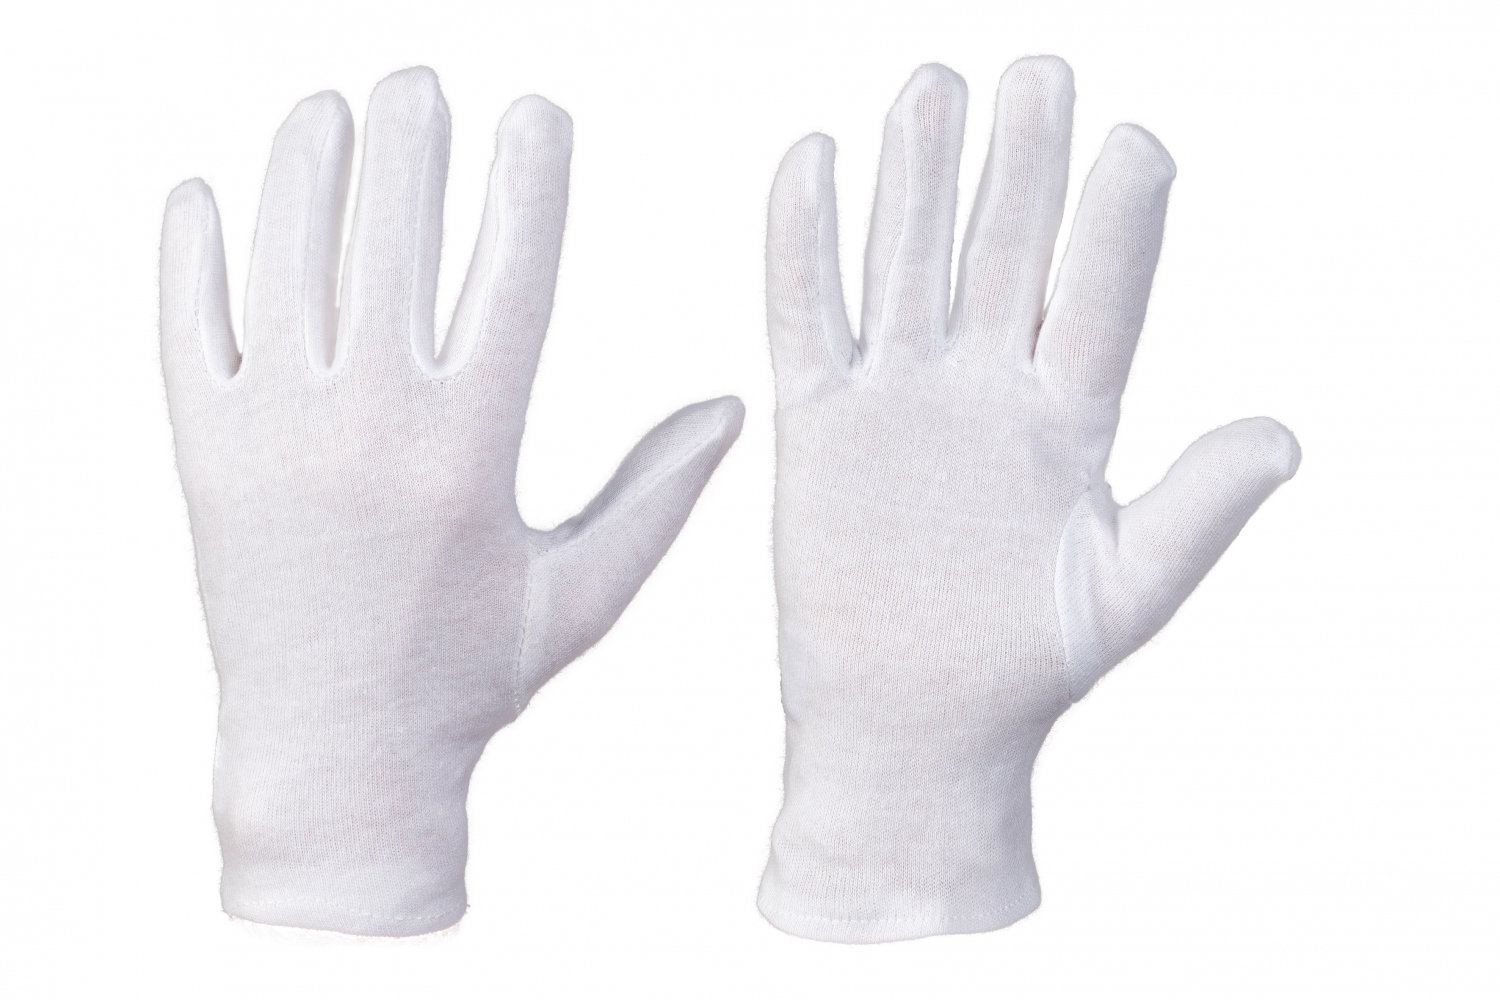 pics/Feldtmann 2016/Handschutz/google/stronghand-0300-anshan-cotton-gloves2.jpg